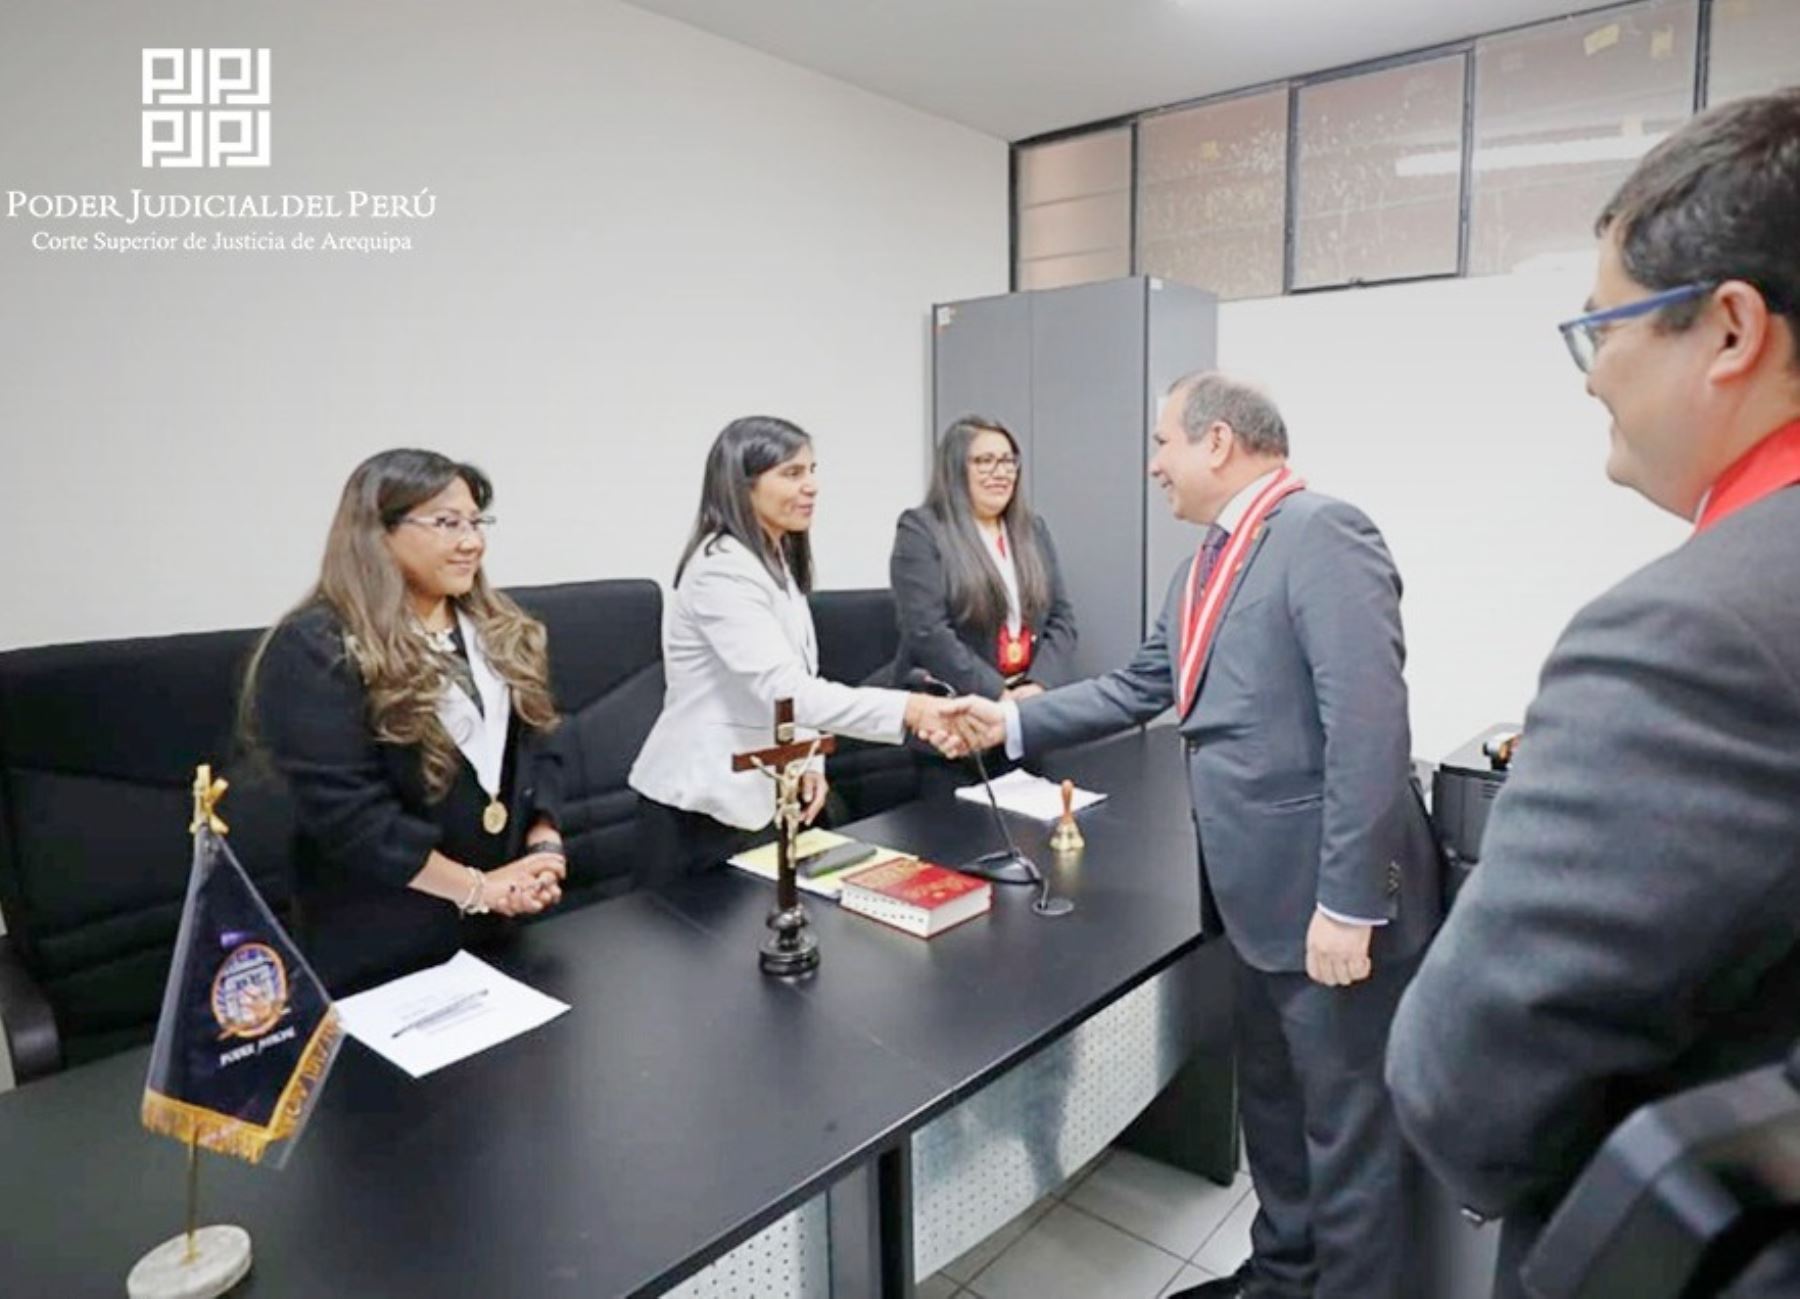 La Corte Superior de Arequipa creó dos juzgados especializados para acelerar hasta en dos años los procesos sobre violencia contra la mujer en la región Arequipa. ANDINA/Difusión